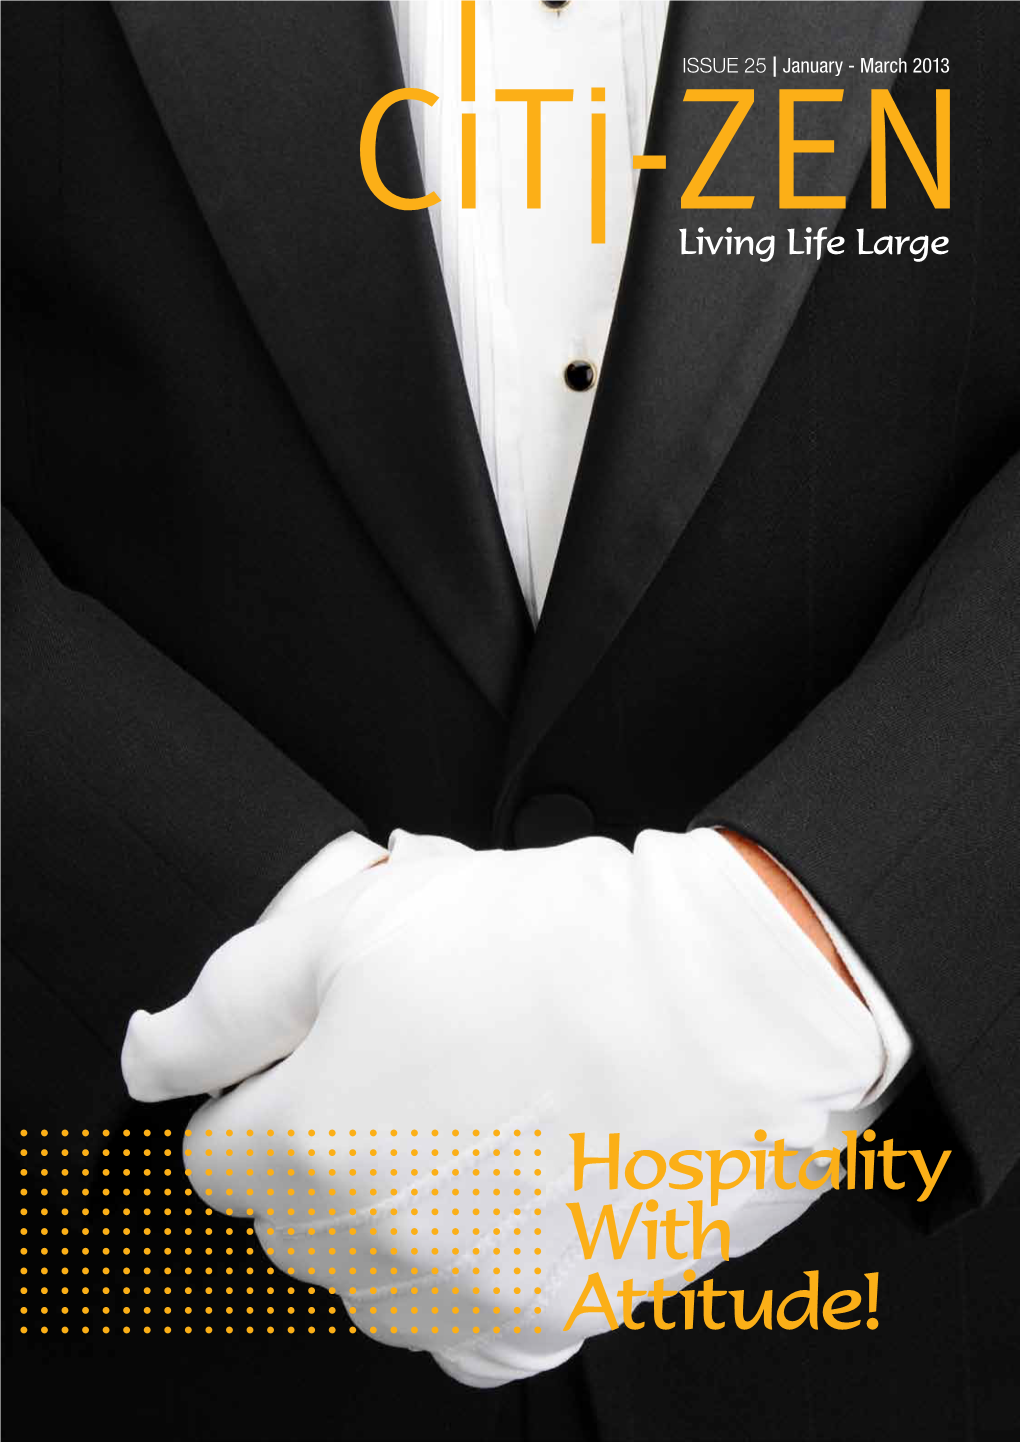 Hospitality with Attitude! 2 Citi-ZEN • ISSUE 25 Citi-ZEN • ISSUE 25 1